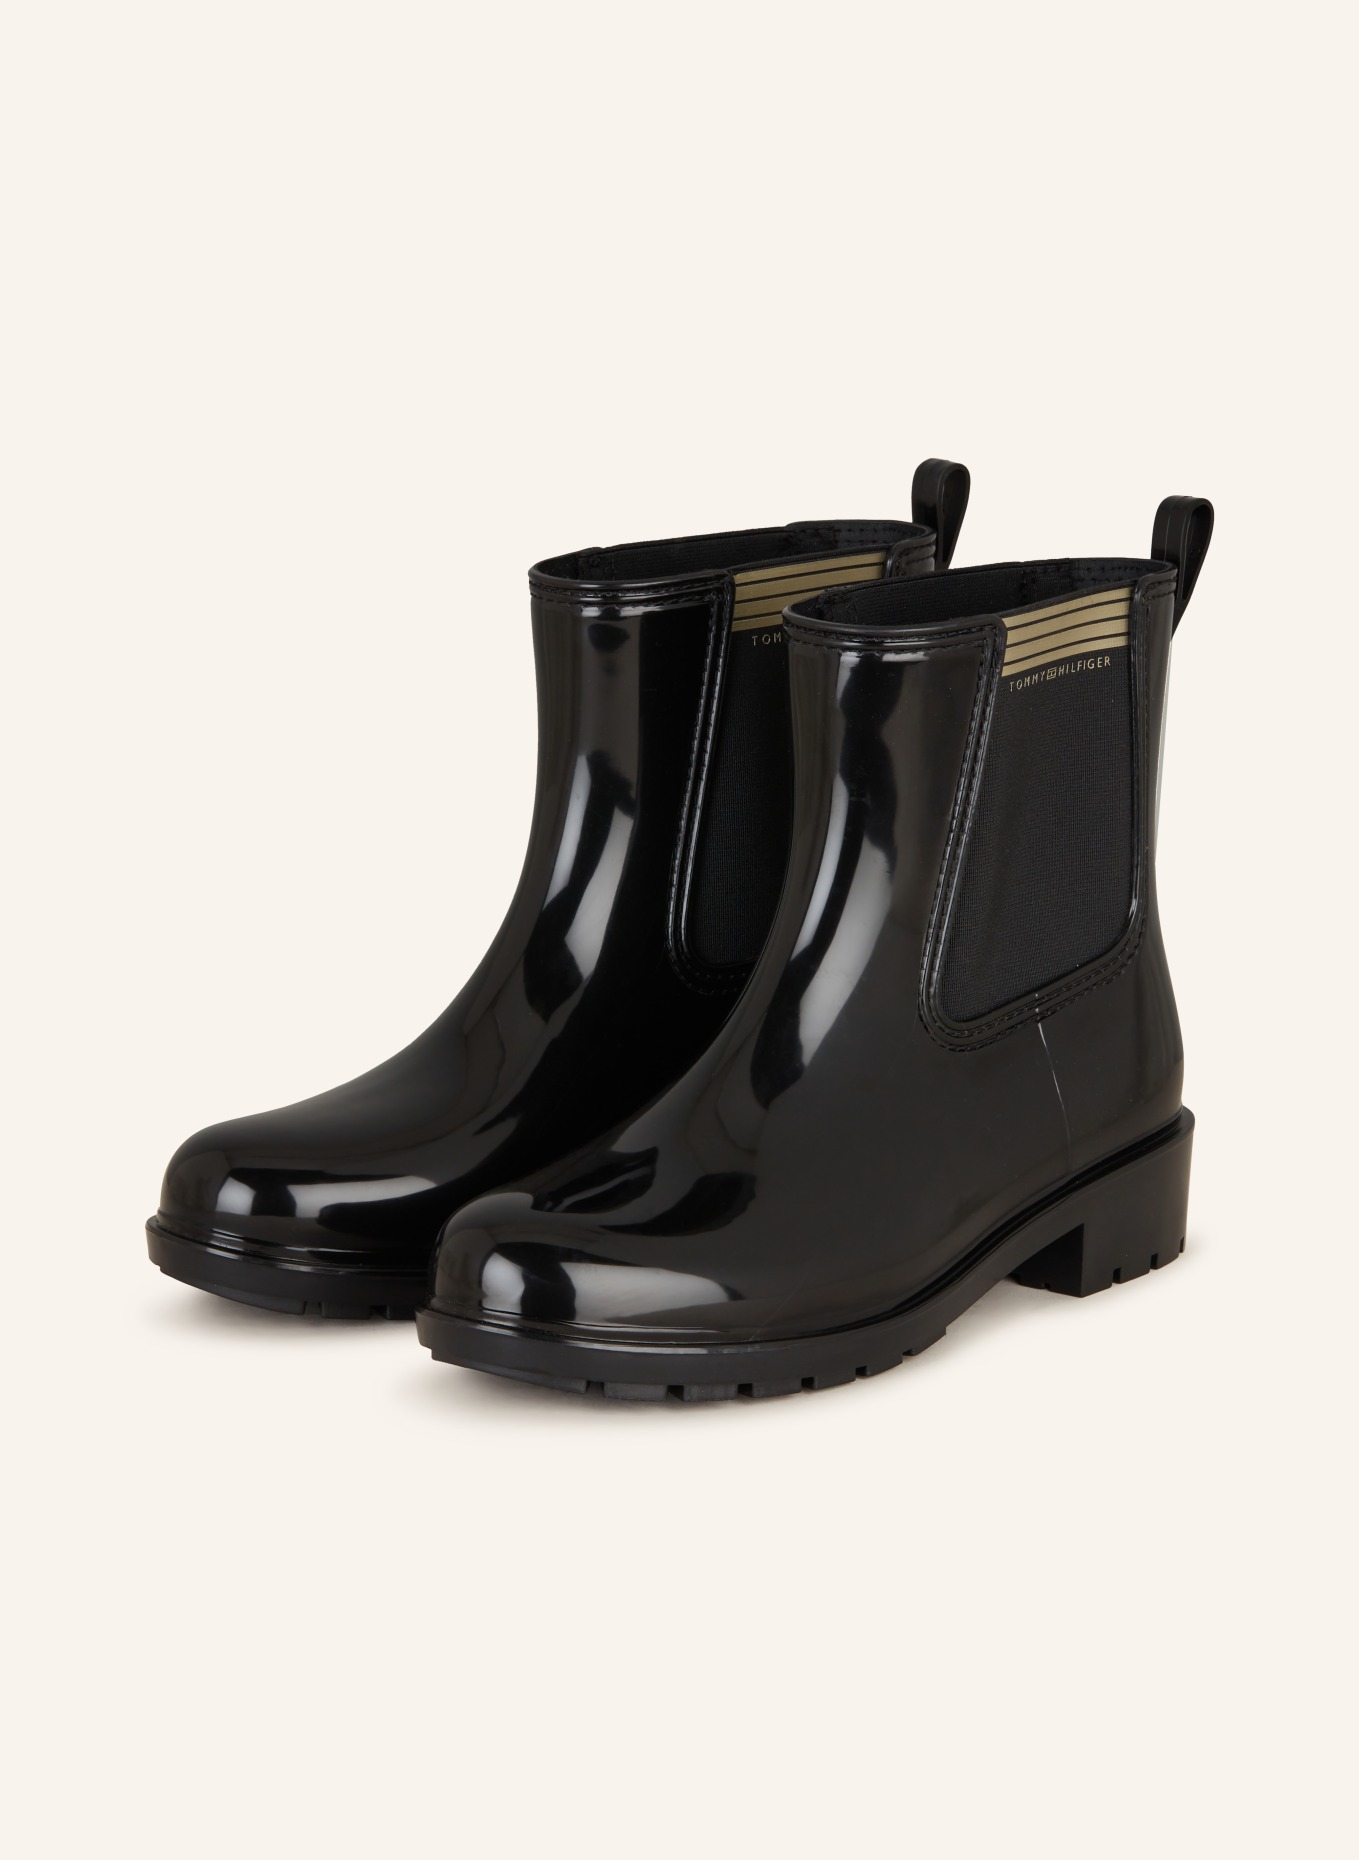 TOMMY HILFIGER Chelsea-Boots ESSENTIAL, Farbe: SCHWARZ (Bild 1)